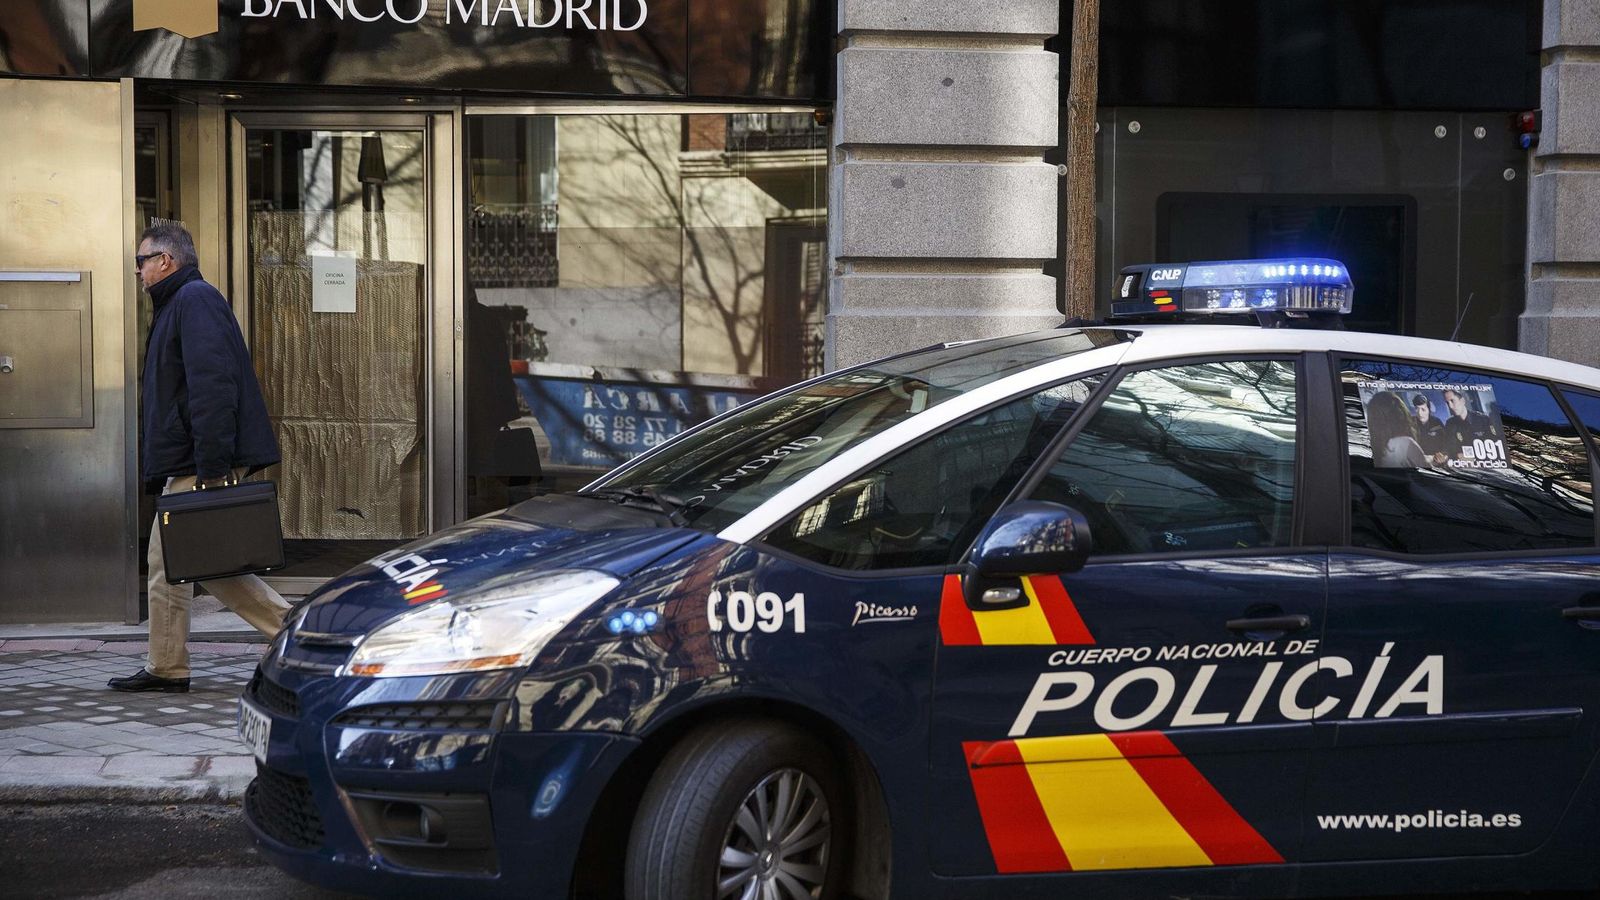 Foto: Un coche de policía frente a la sede del Banco de Madrid. (Reuters)